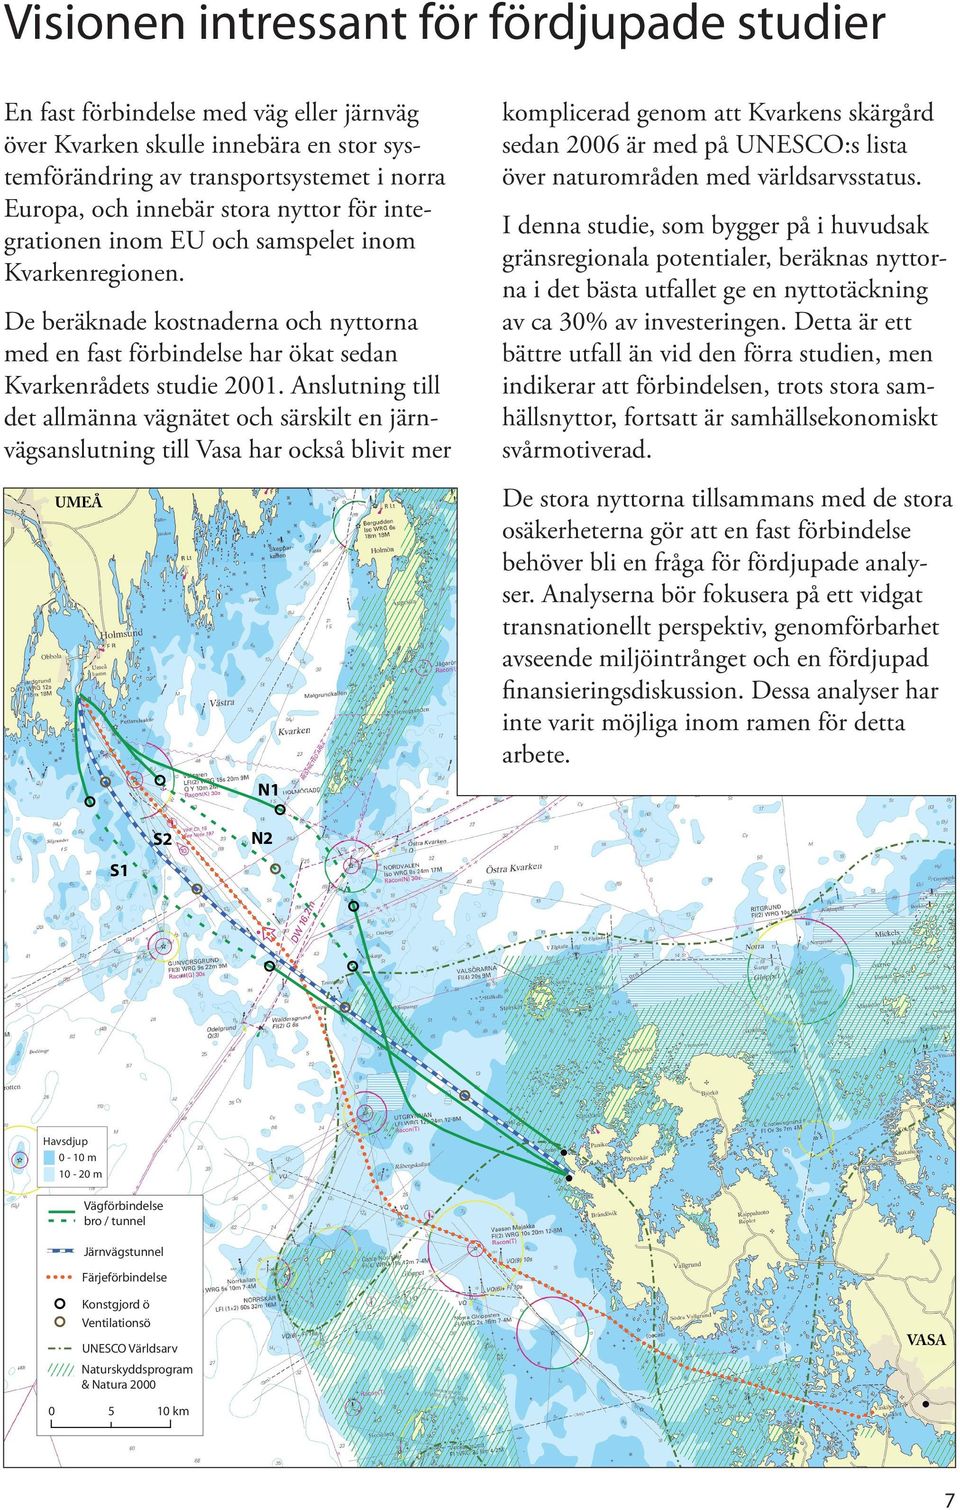 Anslutning till det allmänna vägnätet och särskilt en järnvägsanslutning till Vasa har också blivit mer komplicerad genom att Kvarkens skärgård sedan 2006 är med på UNESCO:s lista över naturområden